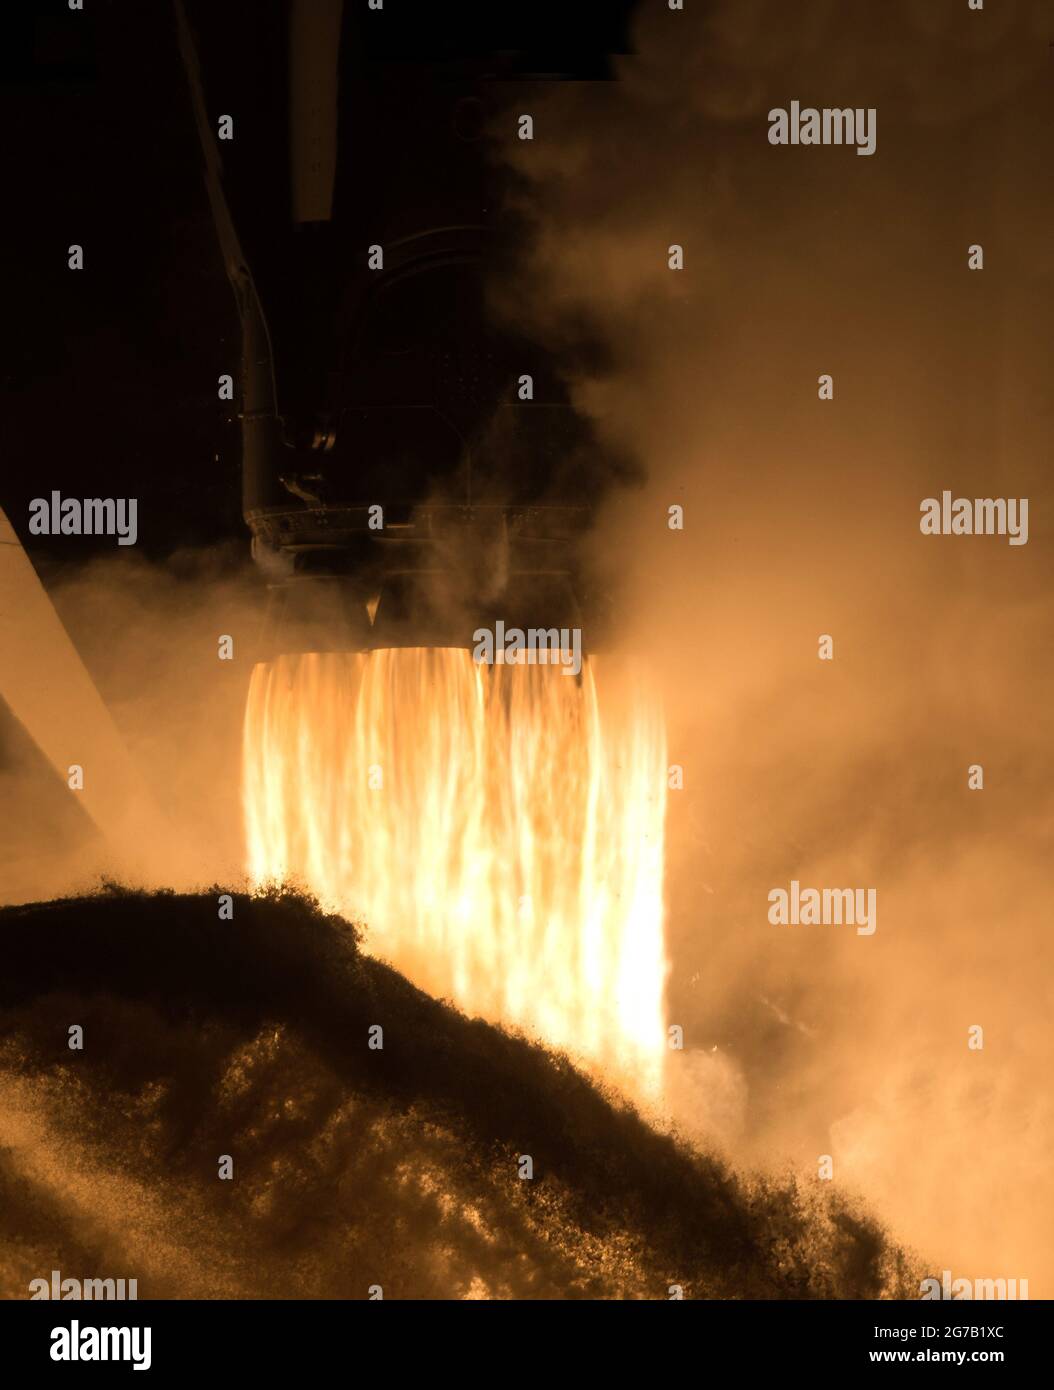 Un cohete SpaceX Falcon 9 que transporta la nave espacial Crew Dragon de la compañía se lanza en la misión SpaceX Crew-1 de la NASA a la Estación Espacial Internacional. 15 de noviembre de 2020, Kennedy Space Center en Florida. Una versión única, optimizada y mejorada digitalmente de una imagen de la NASA por J Kowsky/ crédito de la NASA Foto de stock